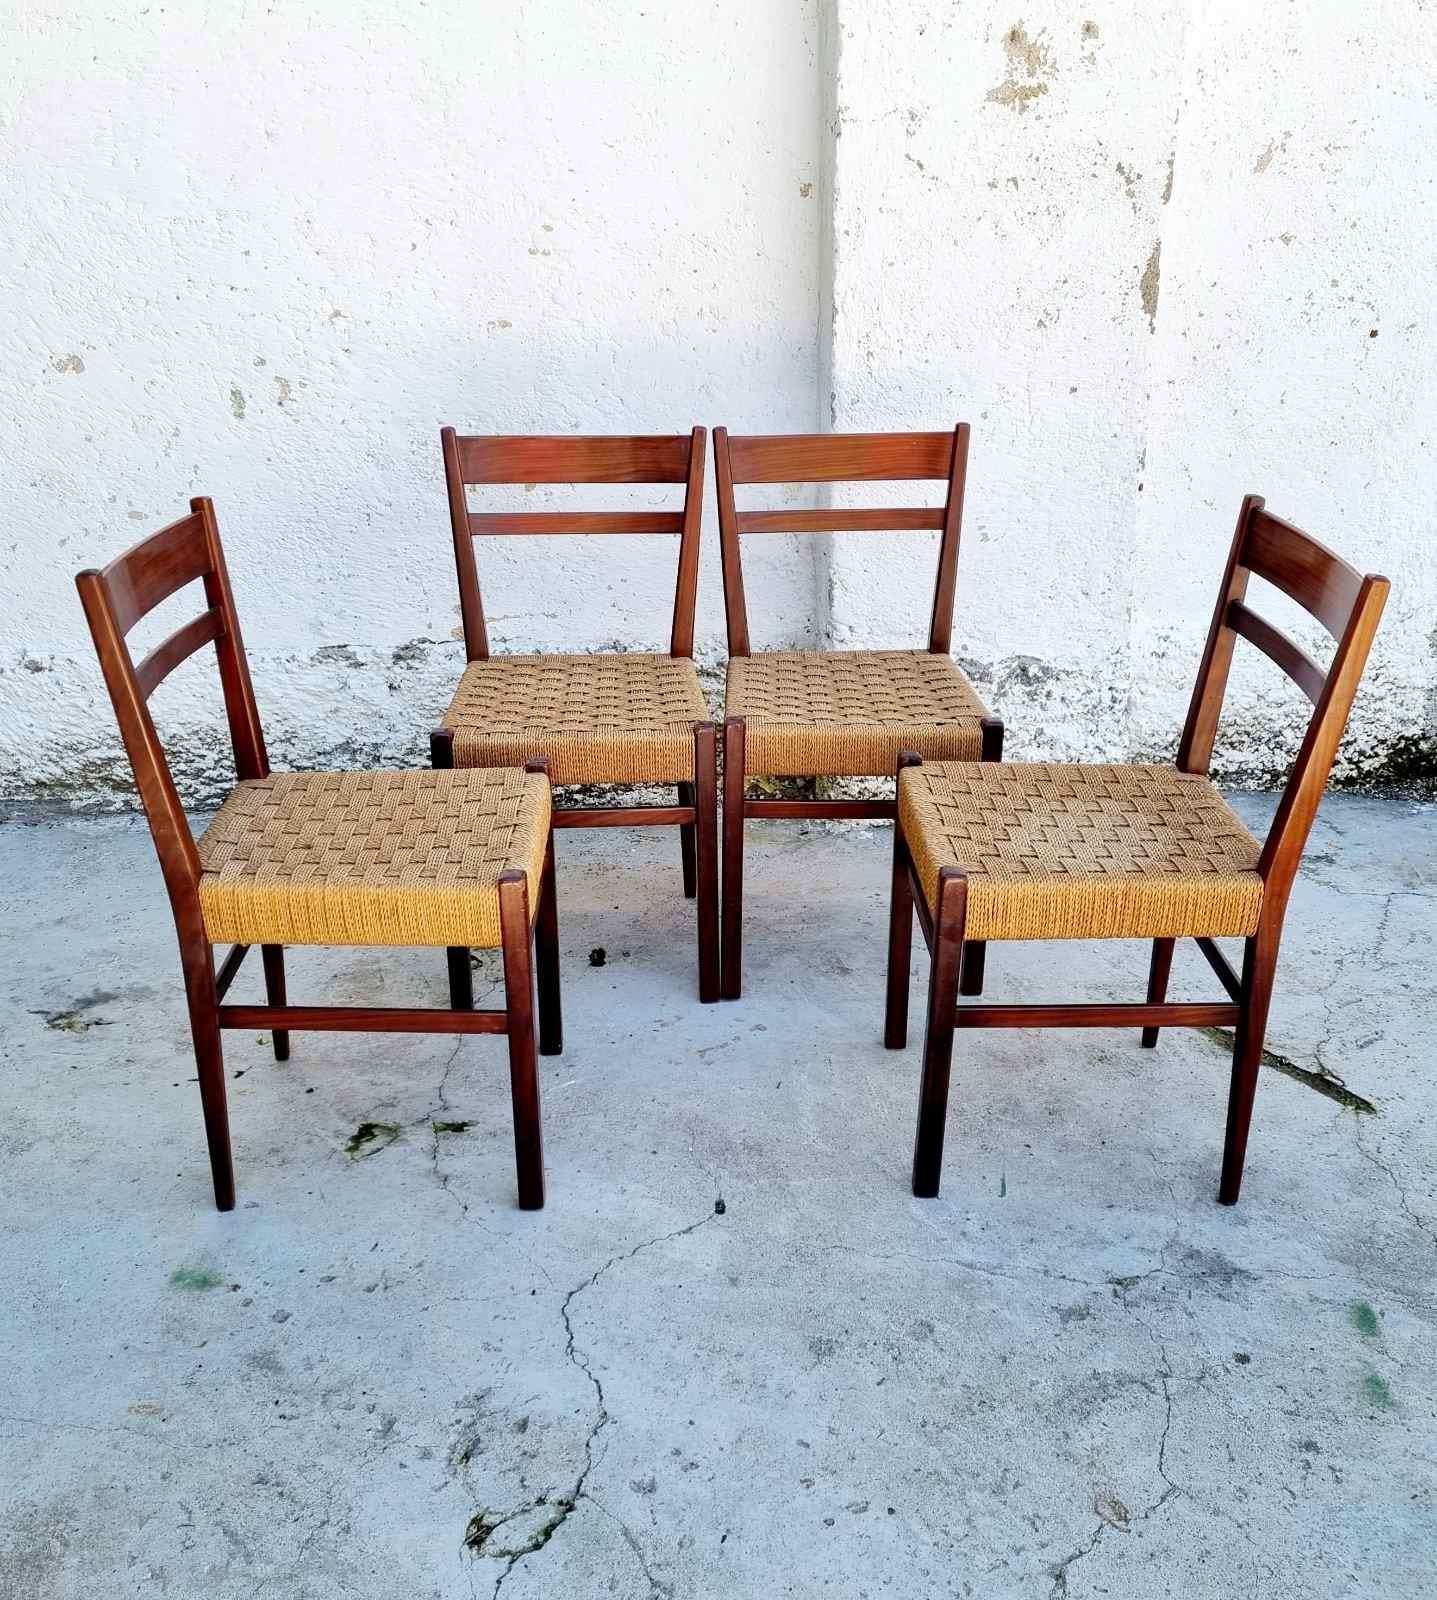 Schönes Set von 4 Esszimmerstühlen im skandinavischen Stil
Hergestellt in Italien
Perfekter Vintage-Zustand